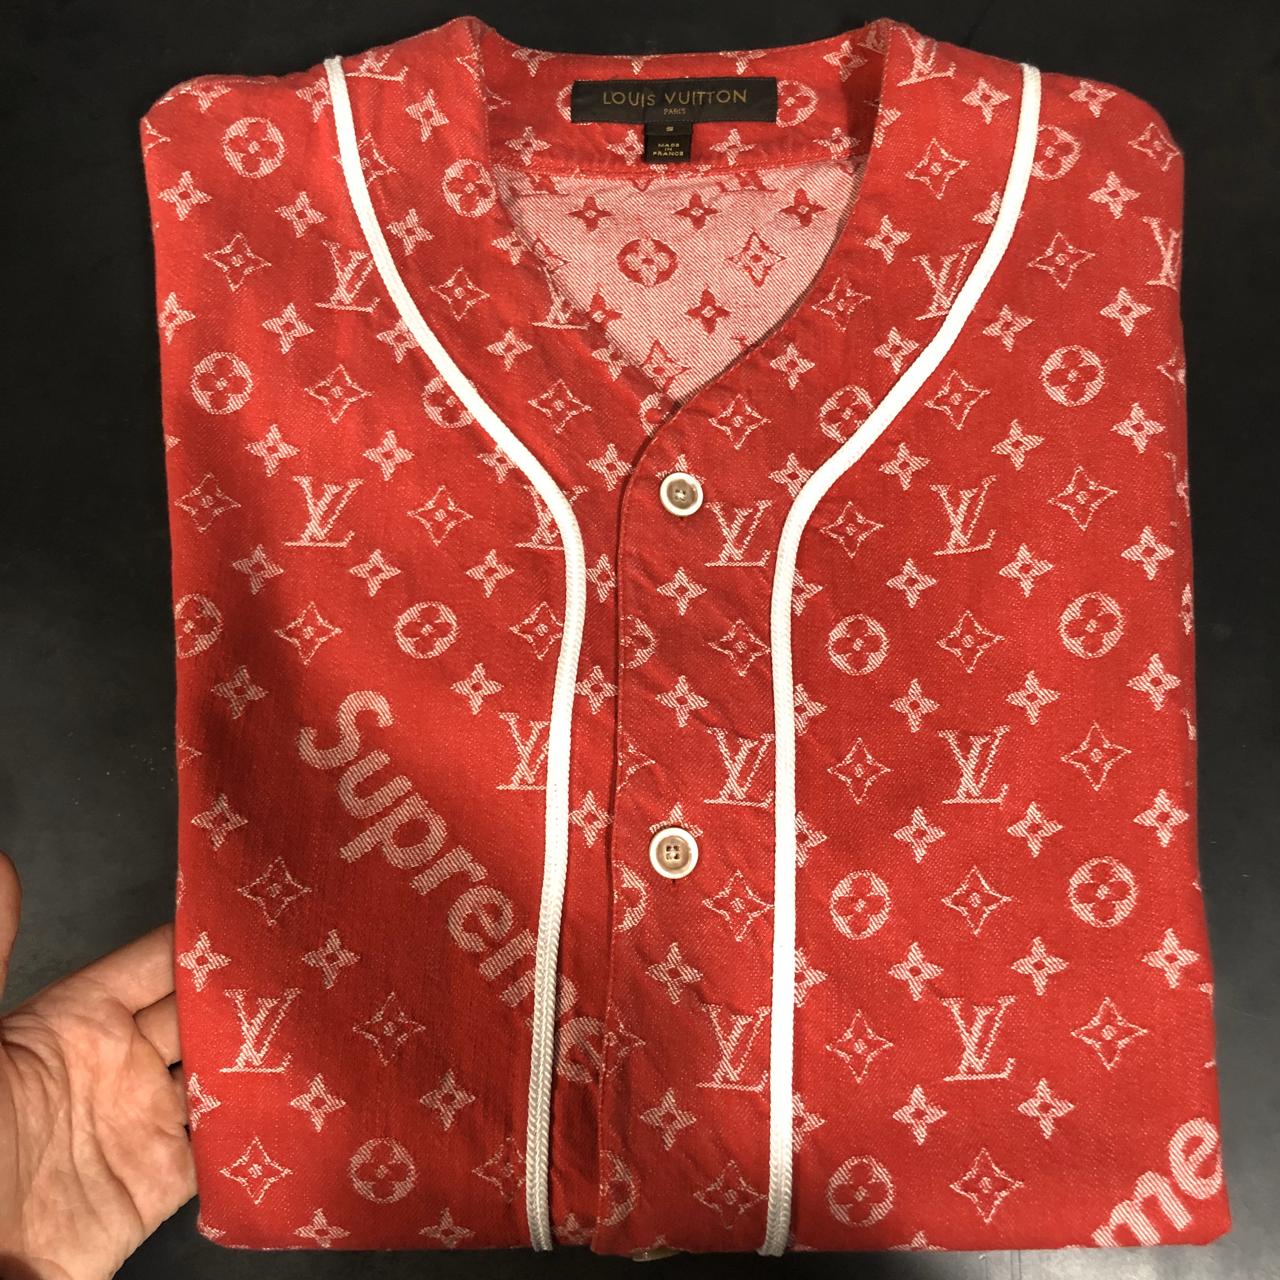 Supreme Supreme x Louis Vuitton baseball jersey